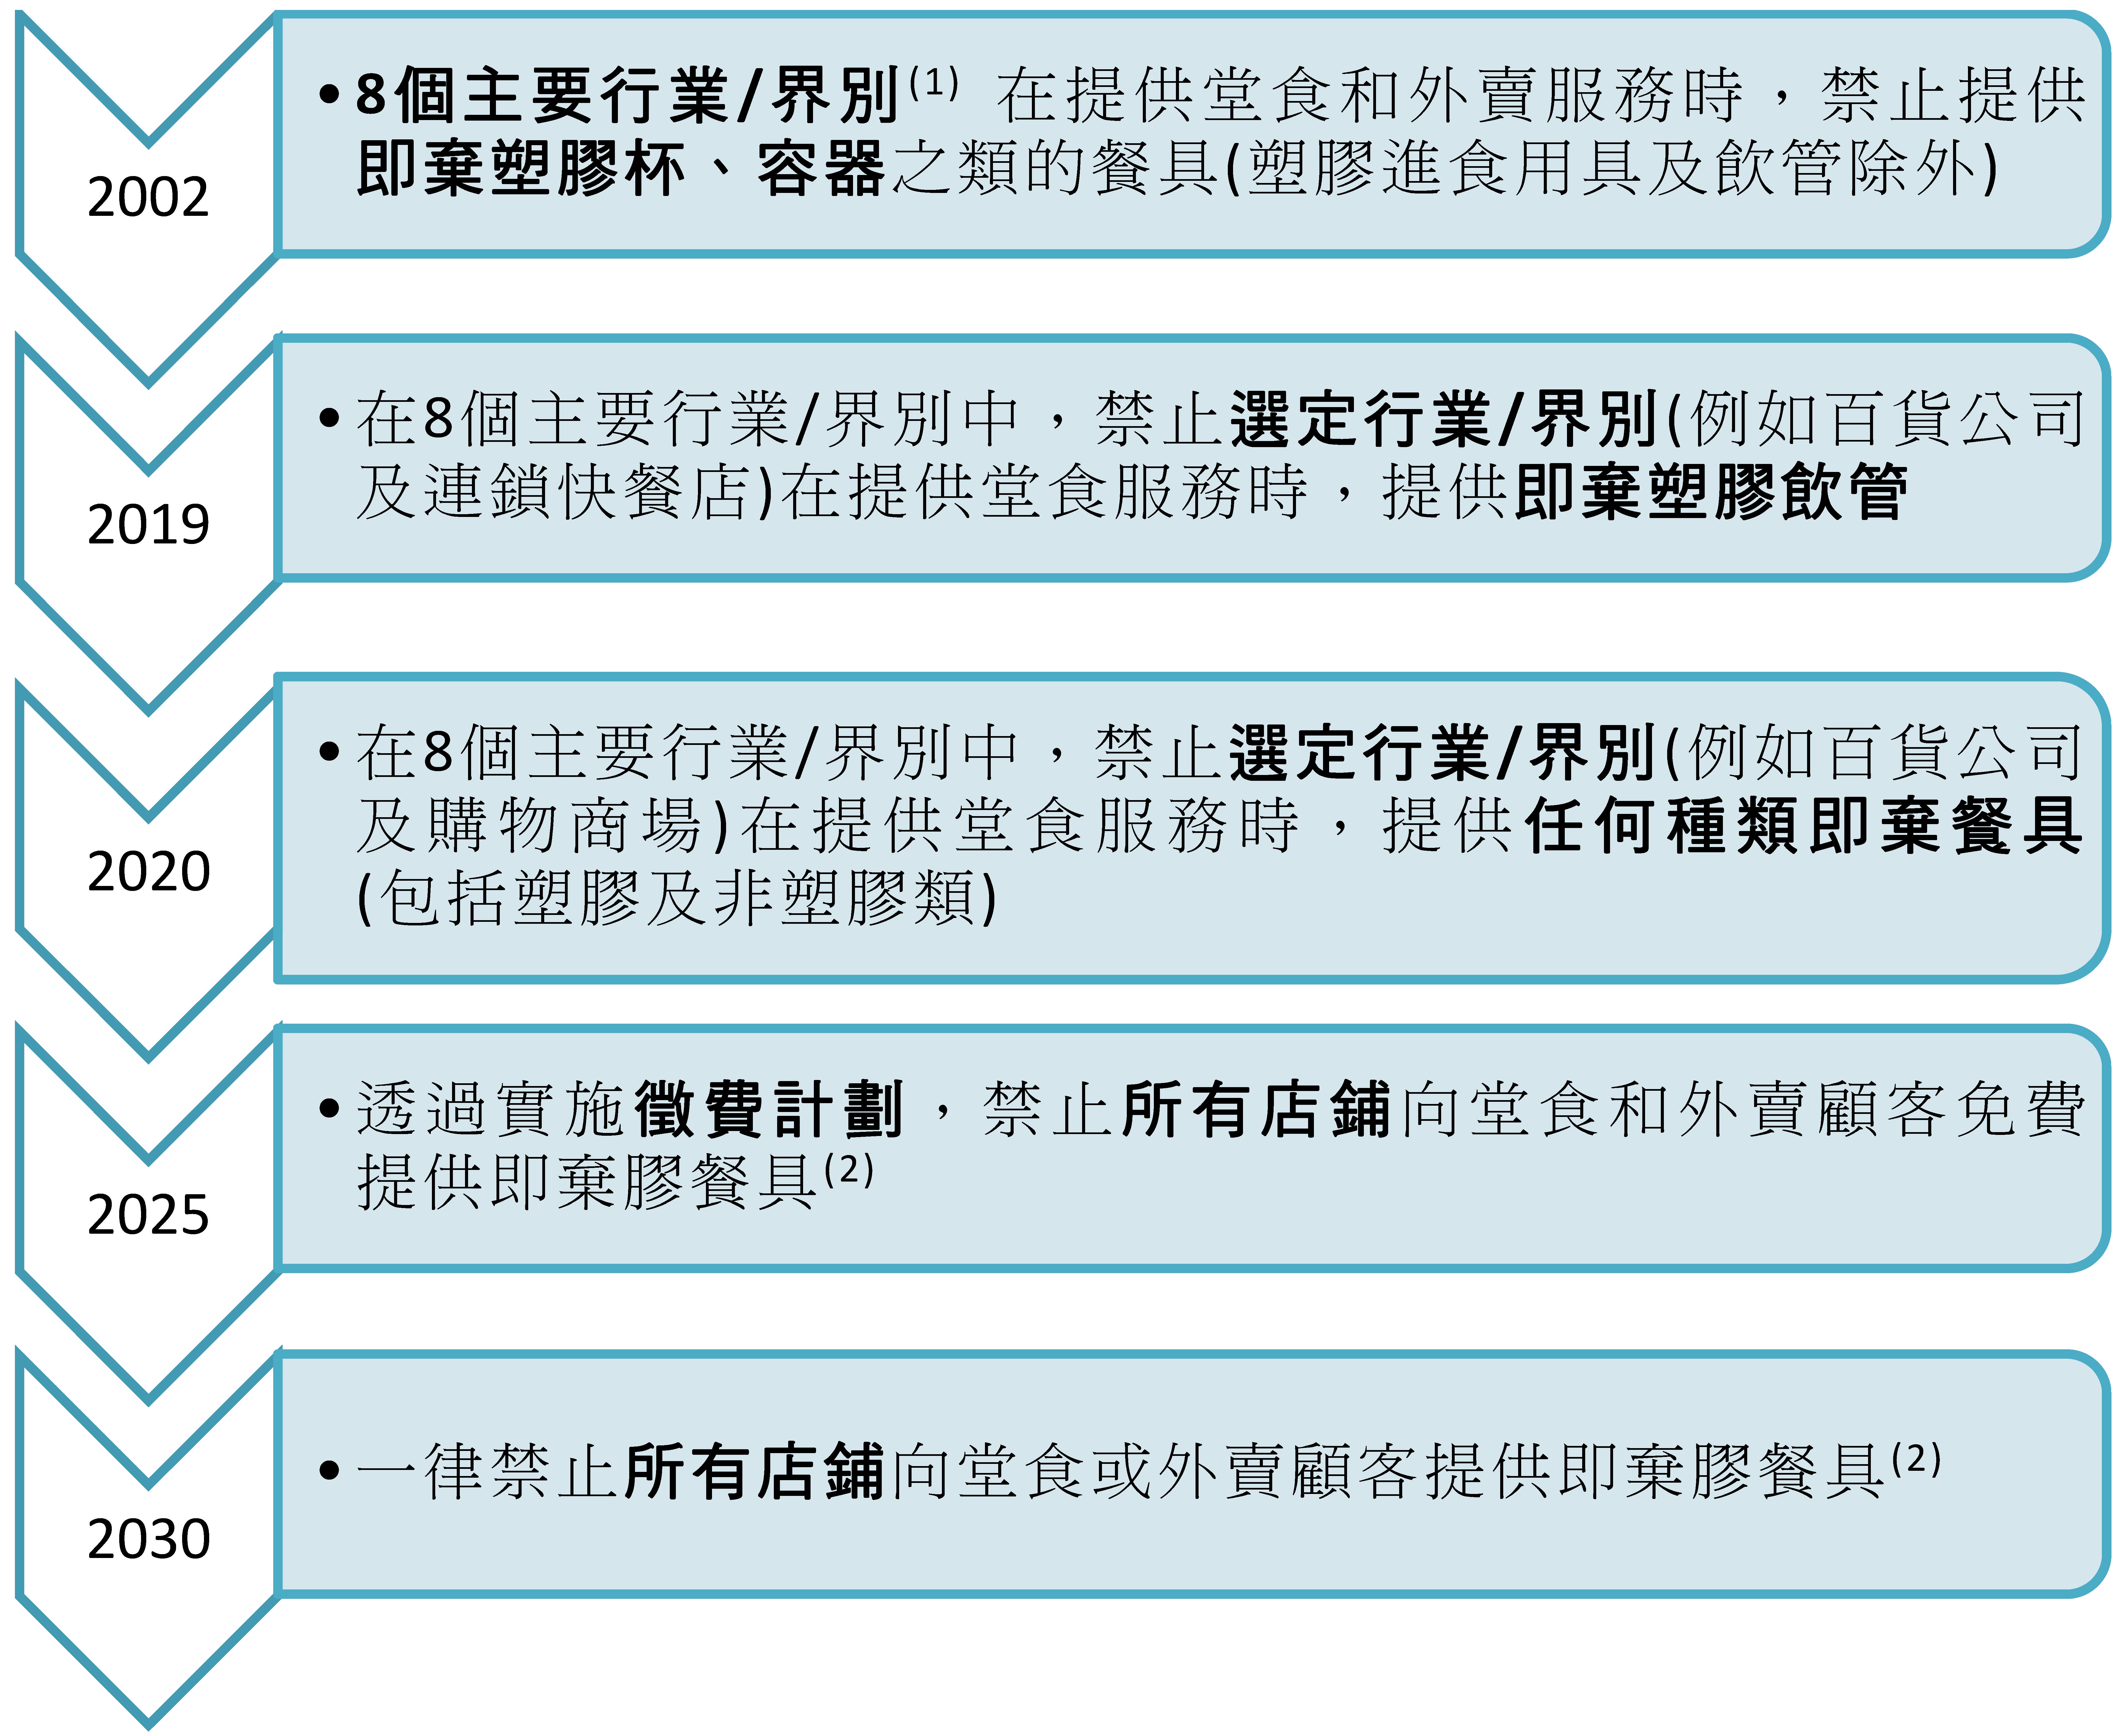 表2 - 台湾即弃胶餐具主要管制措施时间表